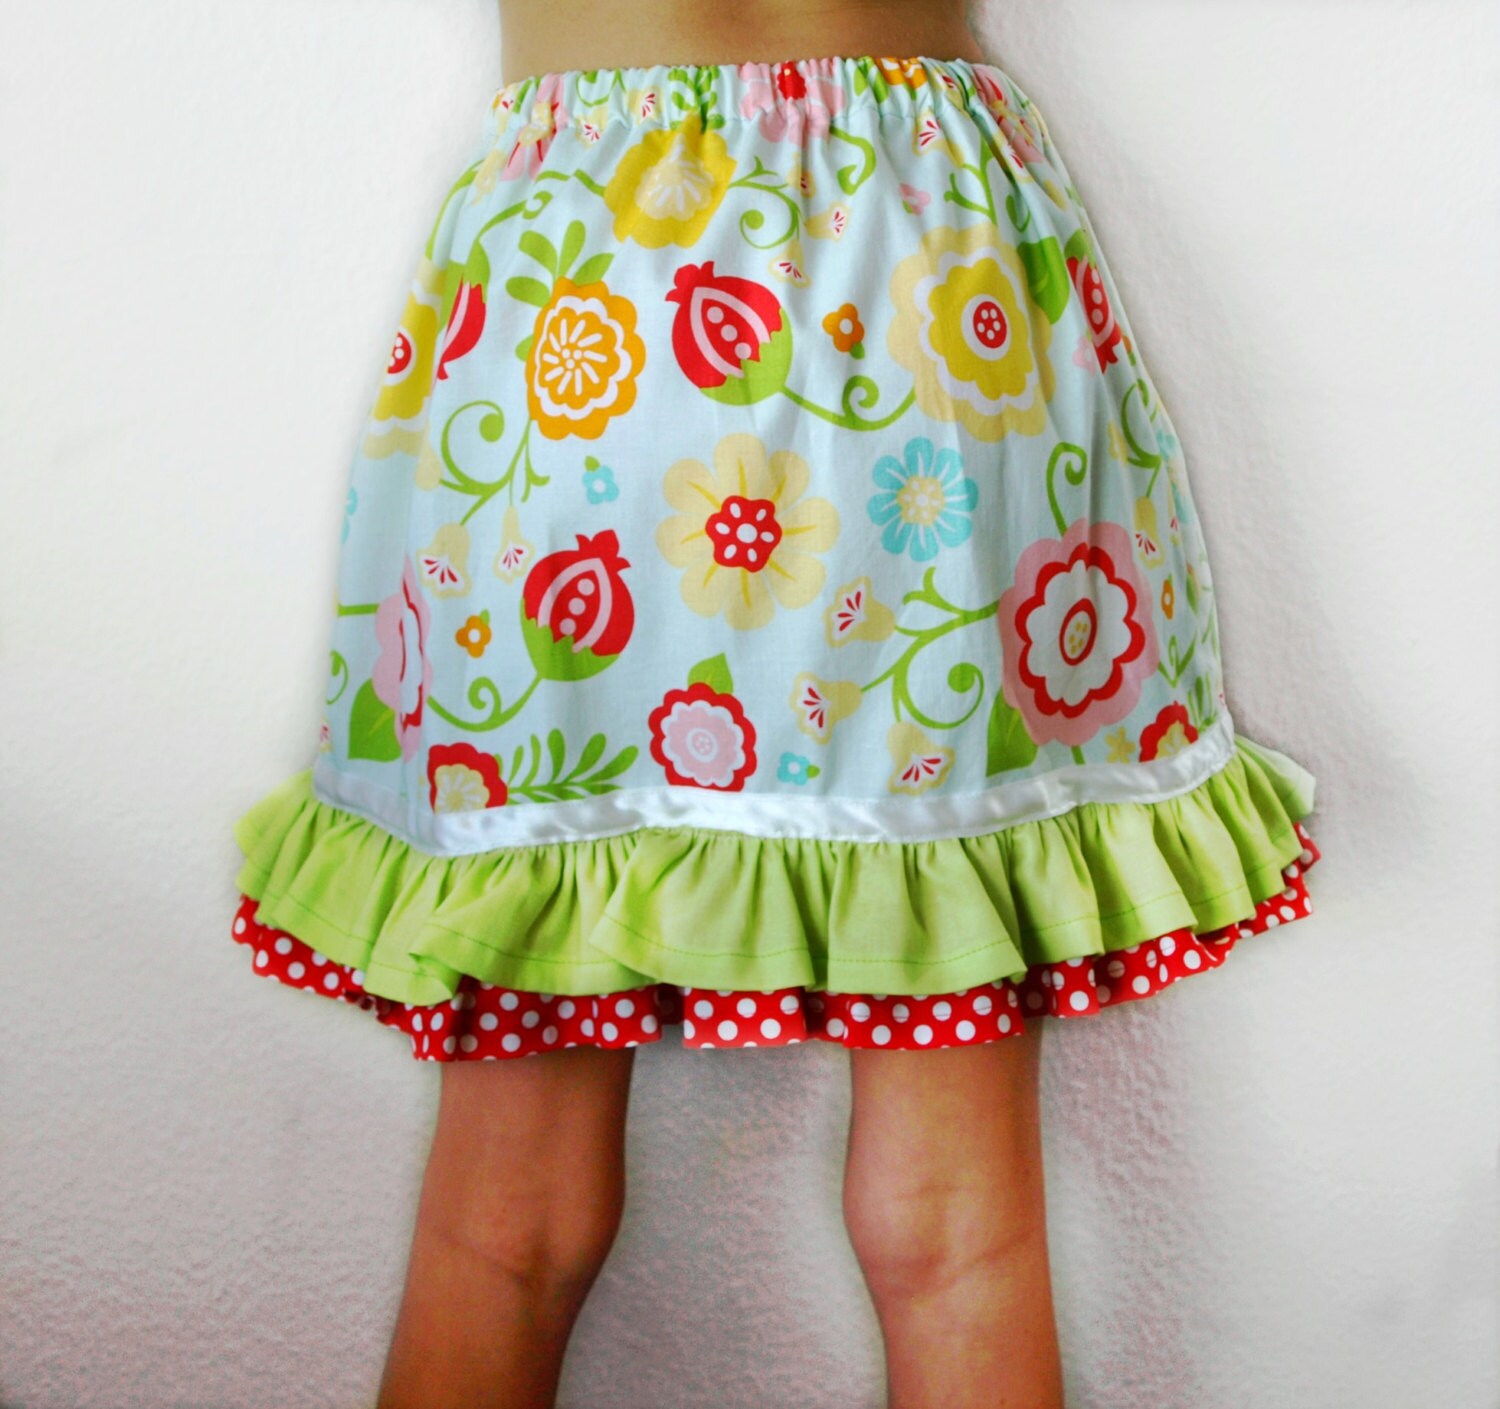 Ruffle skirt pattern Size 1 to 10 Girls skirt pattern by berrykidz